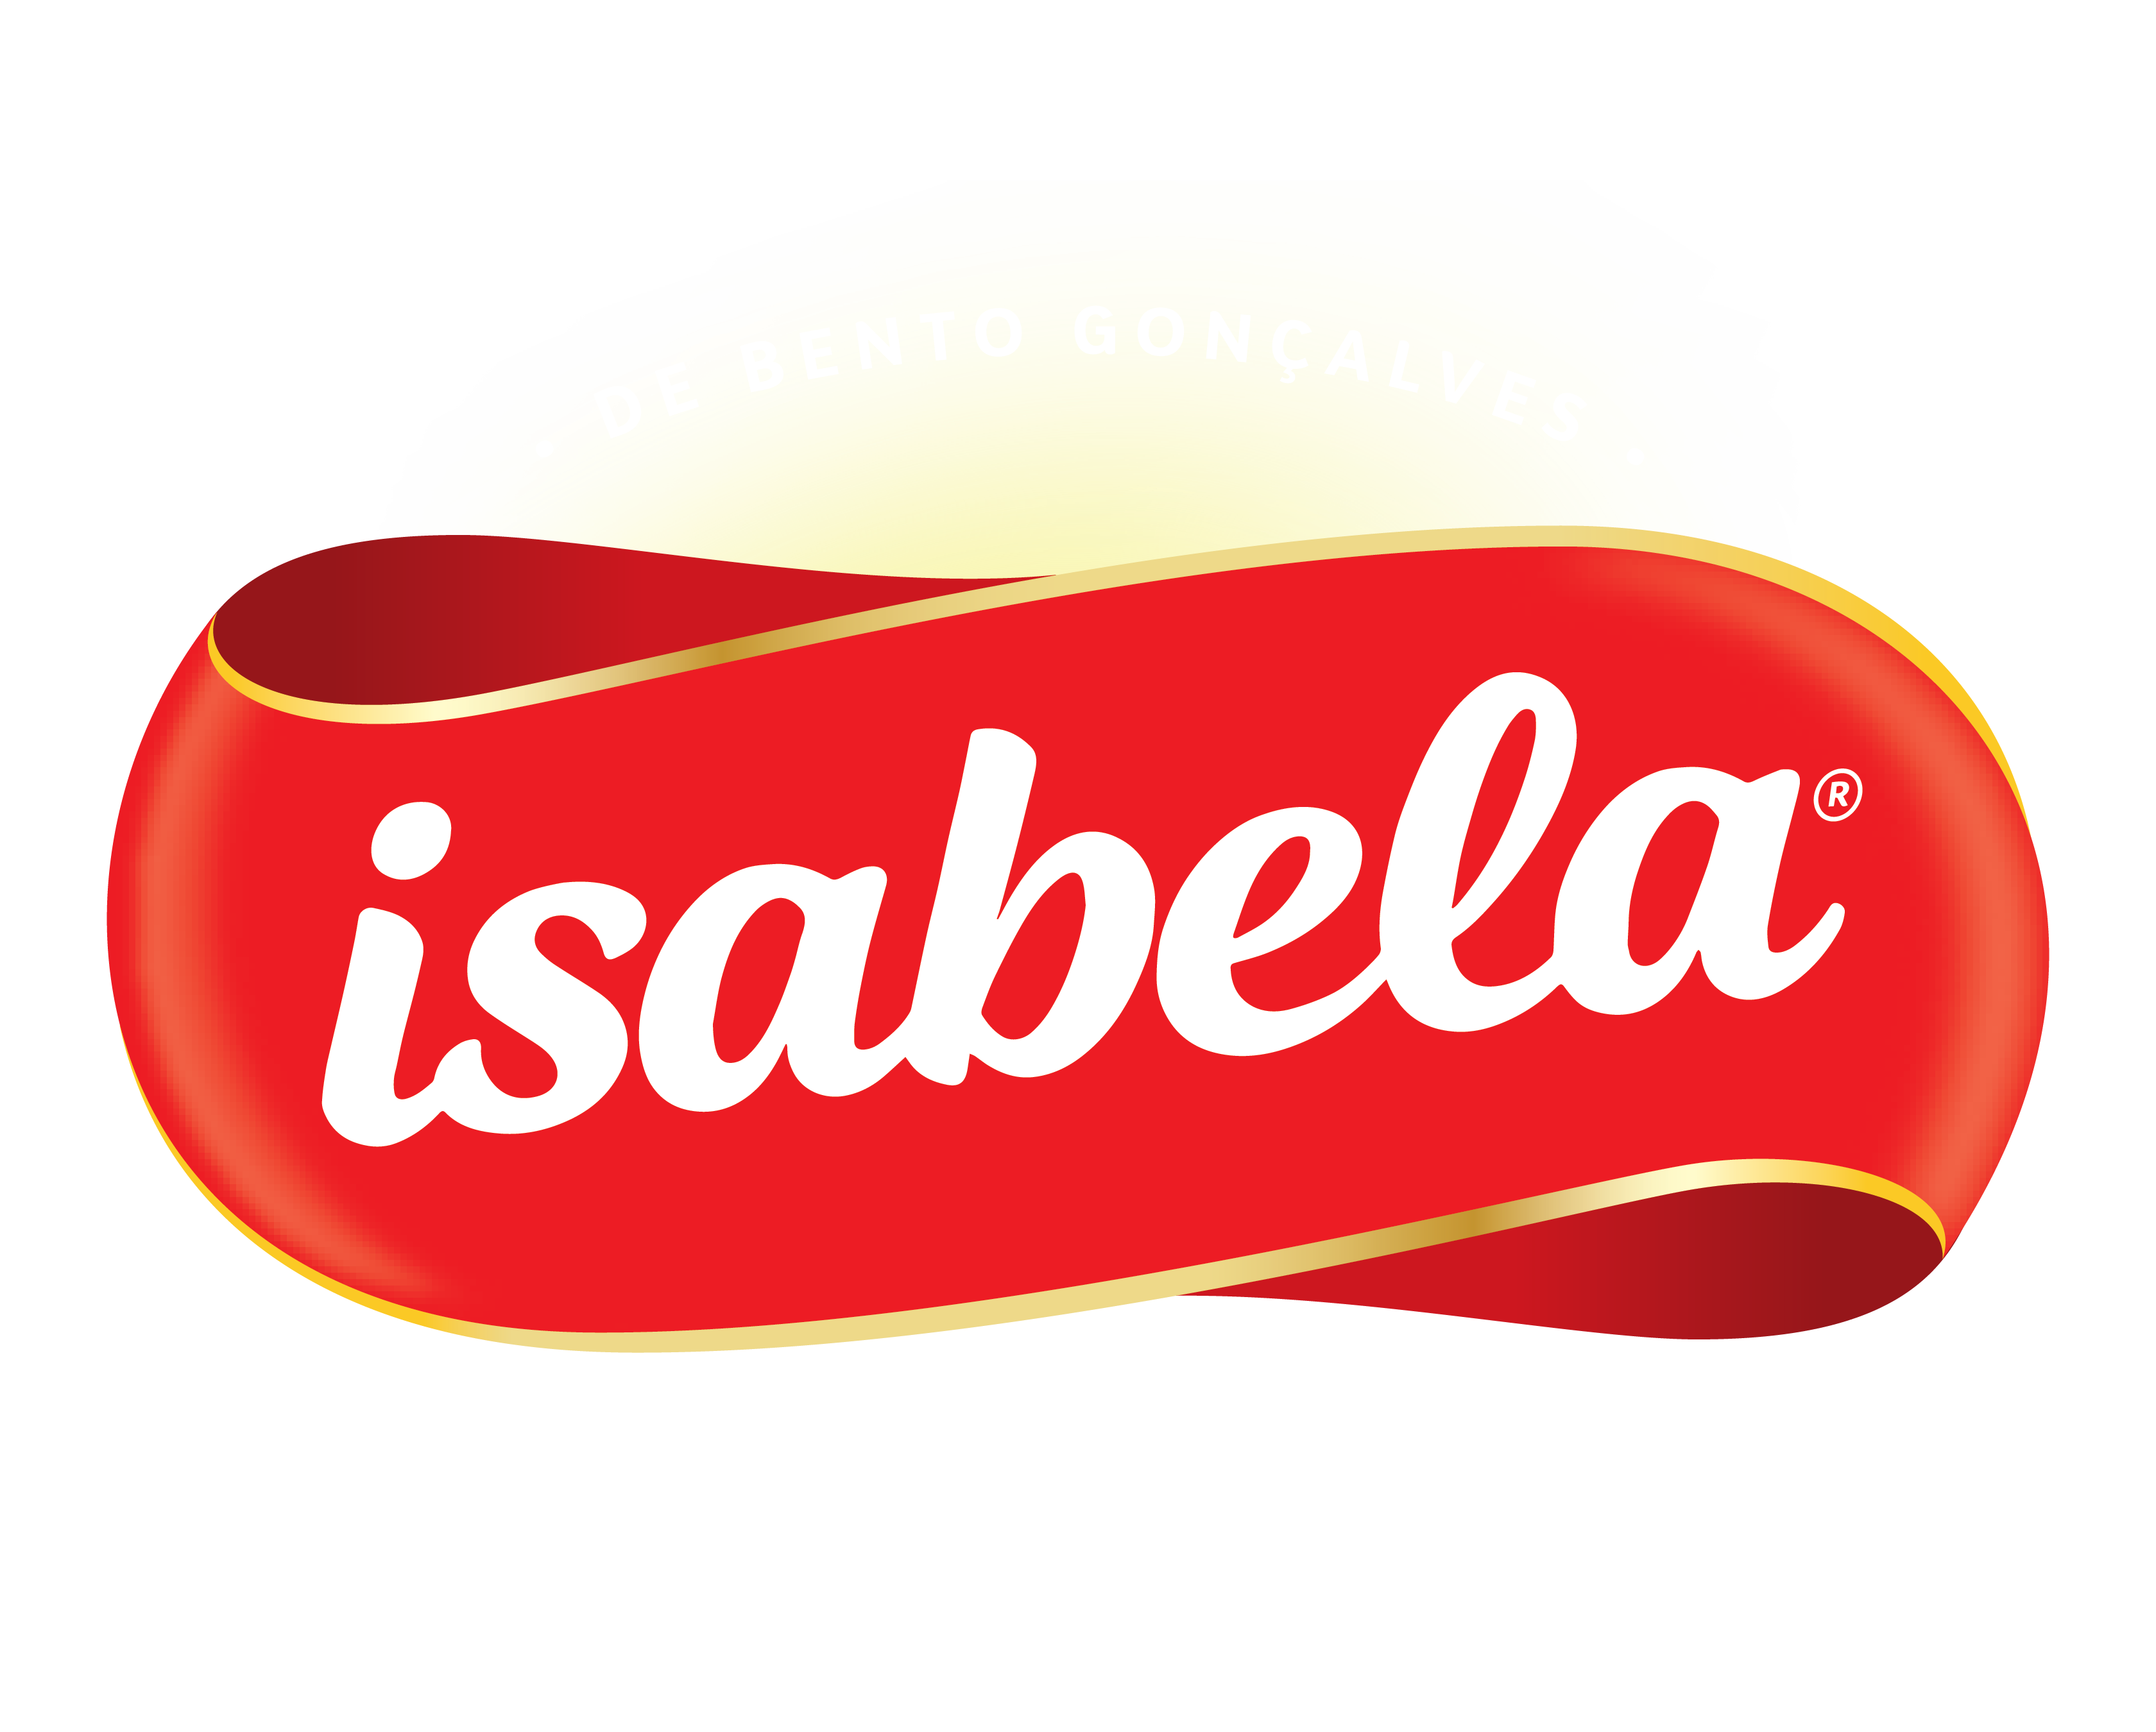 Logo Isabela